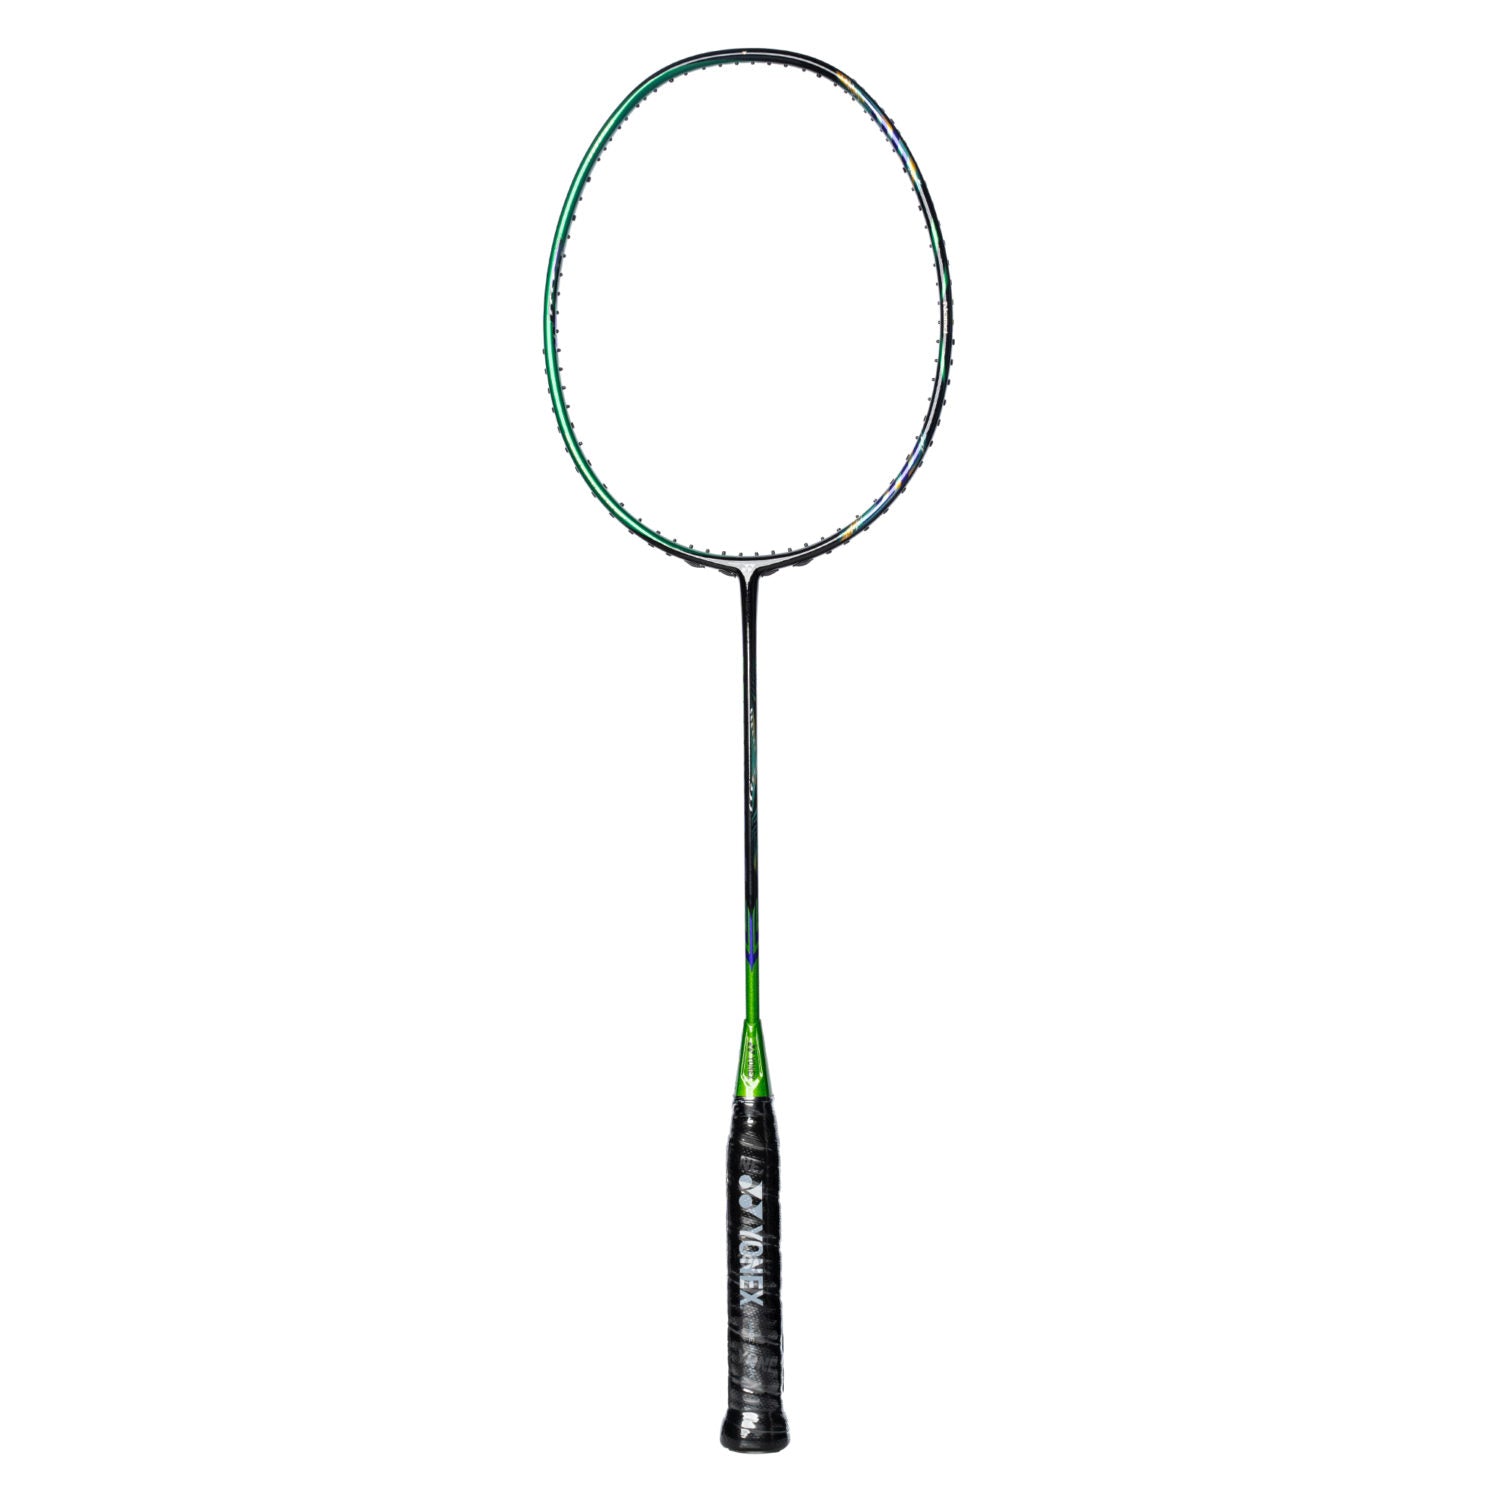 Buy Yonex Astrox 99 LCW Racket @ Lowest Price | Genuine Product 